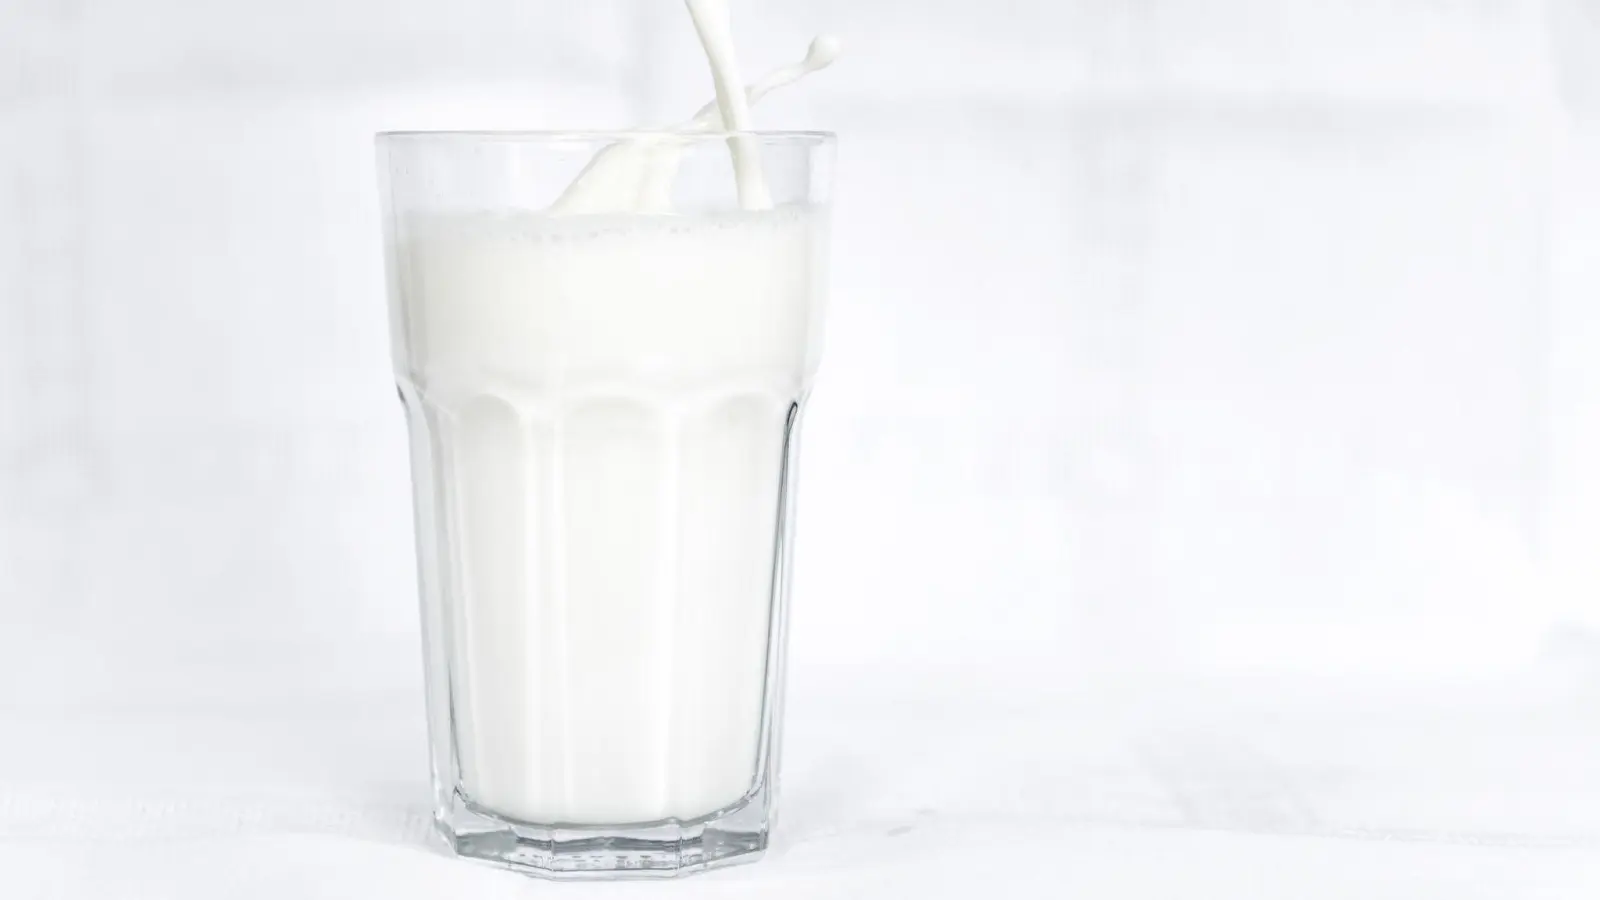 Molkereiprodukte werden wieder günstiger. Aldi etwa will den Preis für einen Liter H-Milch oder frische Vollmilch der Eigenmarke Milsani von 1,15 Euro auf 99 Cent senken. (Foto: Sina Schuldt/dpa)